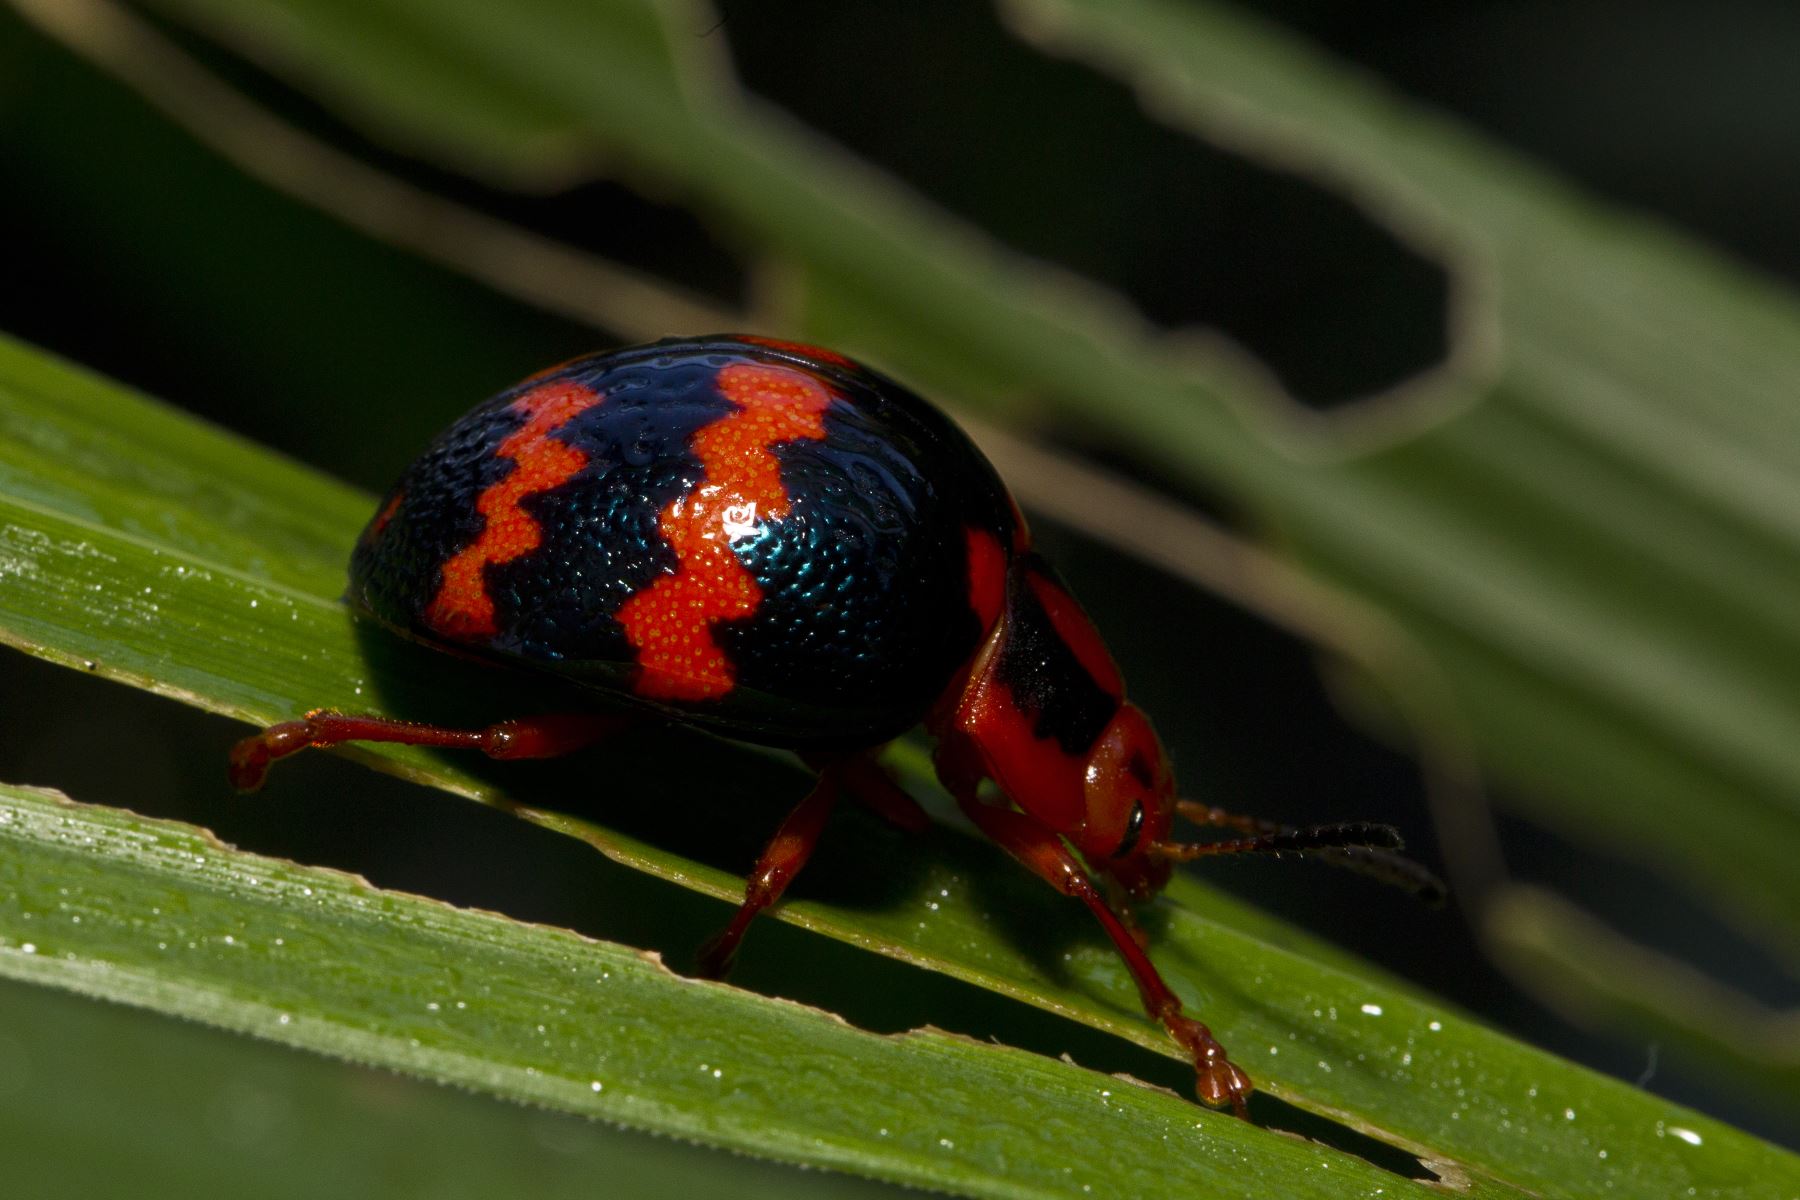 El Parque Nacional del Manu es reconocido por tener una gran variedad de especies de insectos. Foto: ANDINA/Sernanp.